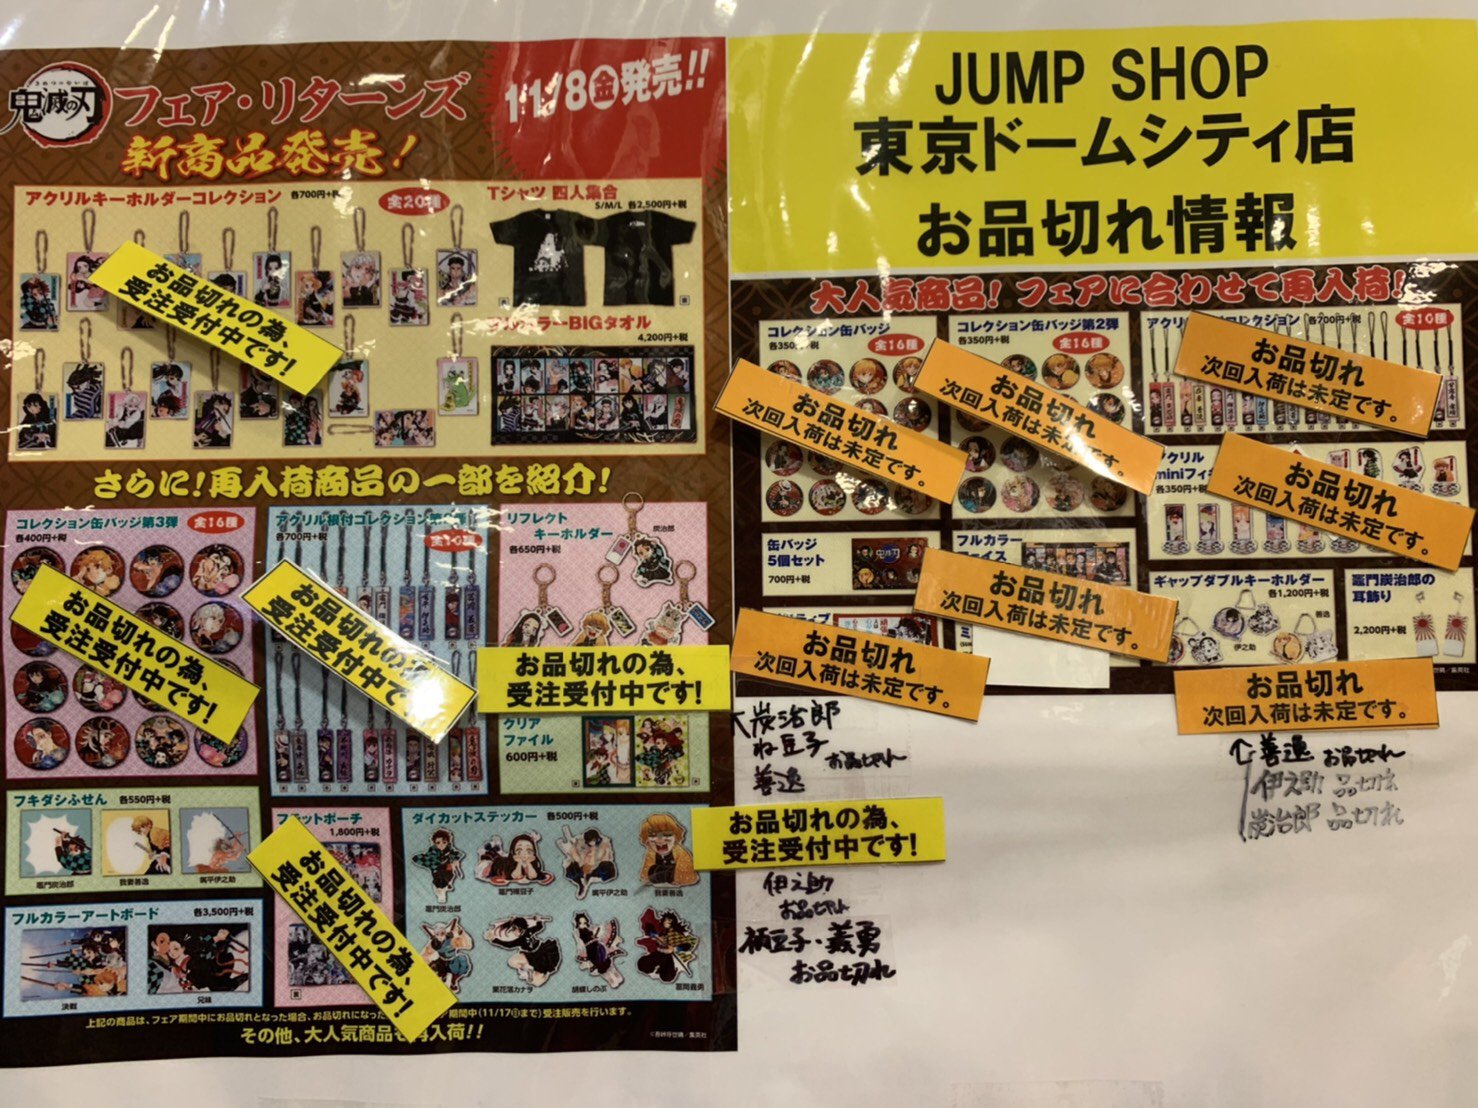 ジャンプショップ Jump Shop 公式 鬼滅の刃 フェア リターンズ在庫状況 Jump Shop東京ドームシティ店の在庫状況は 写真の通りとなります 何卒よろしくお願いいたします T Co Mzlz1ghbmu Twitter